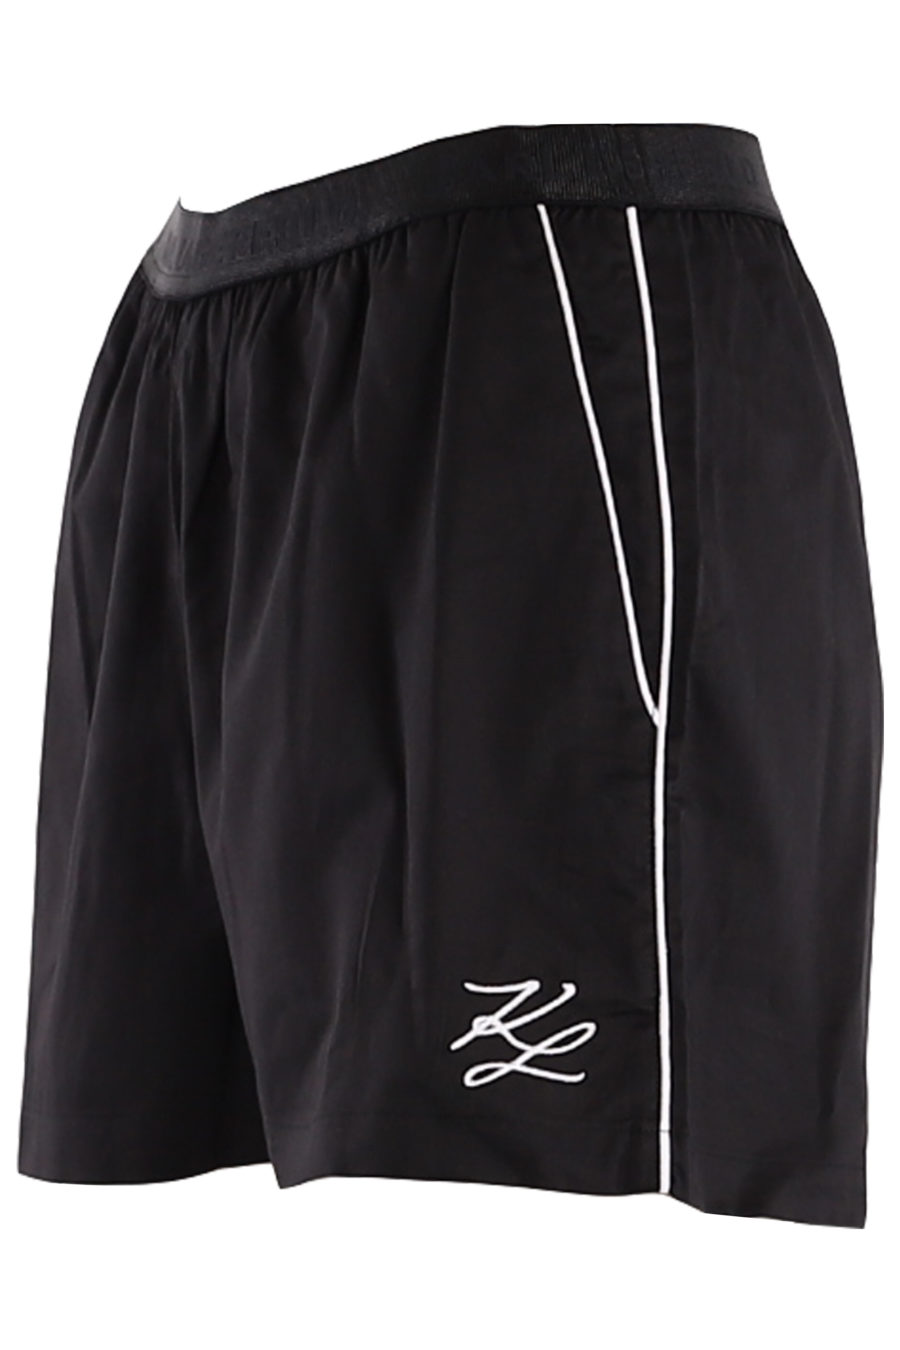 Conjunto pijama con pantalones cortos de color negro - 8769eb2ee033cce1bd767721801e30fcb87ca8bc